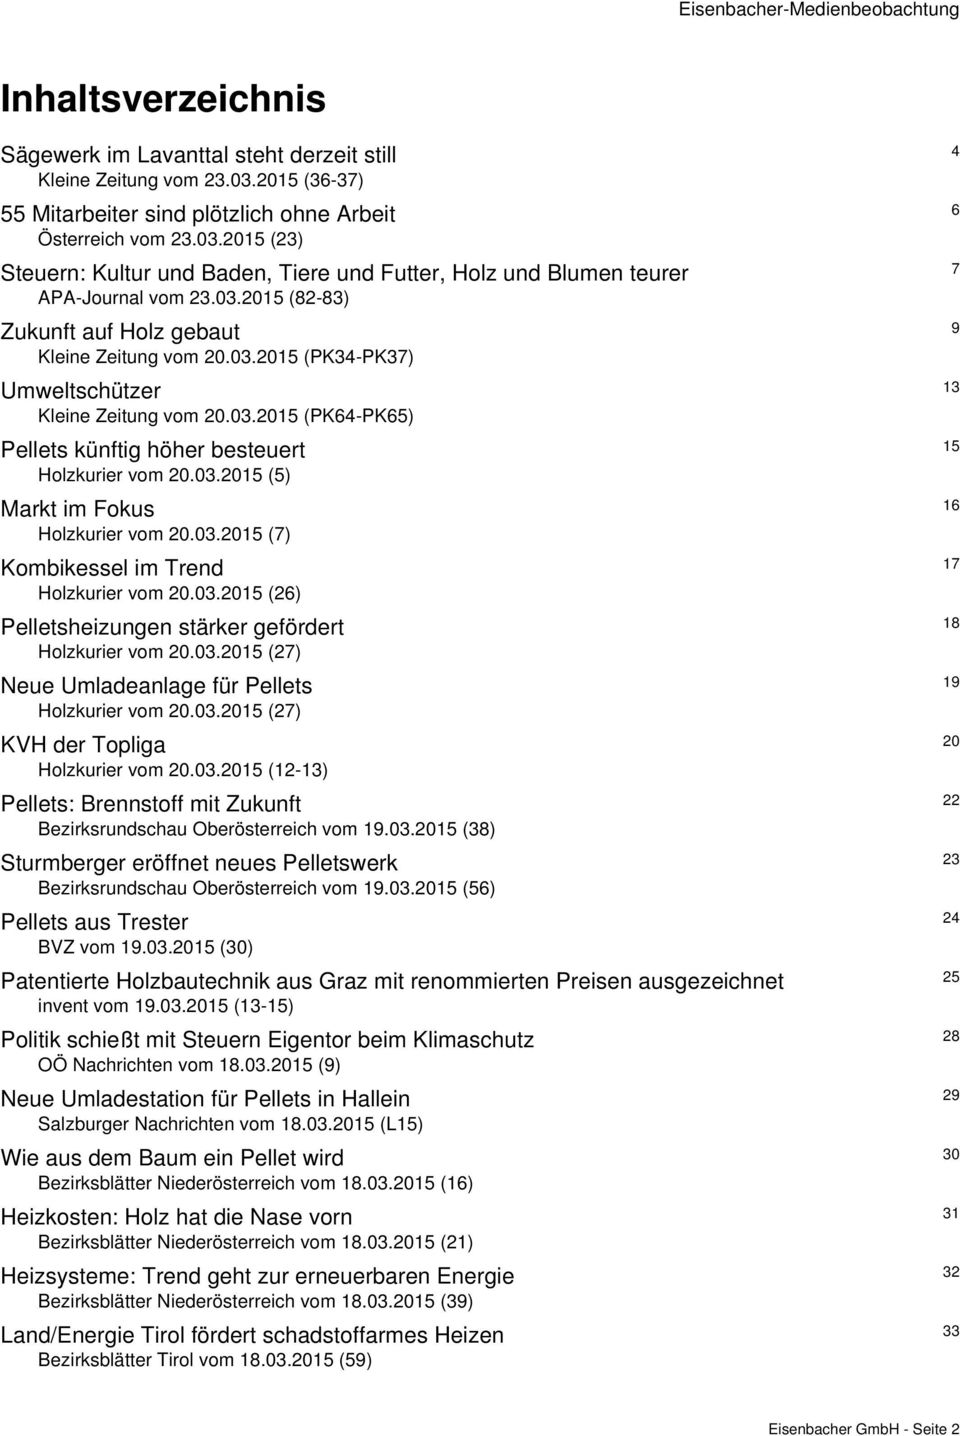 03.2015 (PK34-PK37) 13 Umweltschützer Kleine Zeitung vom 20.03.2015 (PK64-PK65) 15 Pellets künftig höher besteuert Holzkurier vom 20.03.2015 (5) 16 Markt im Fokus Holzkurier vom 20.03.2015 (7) 17 Kombikessel im Trend Holzkurier vom 20.